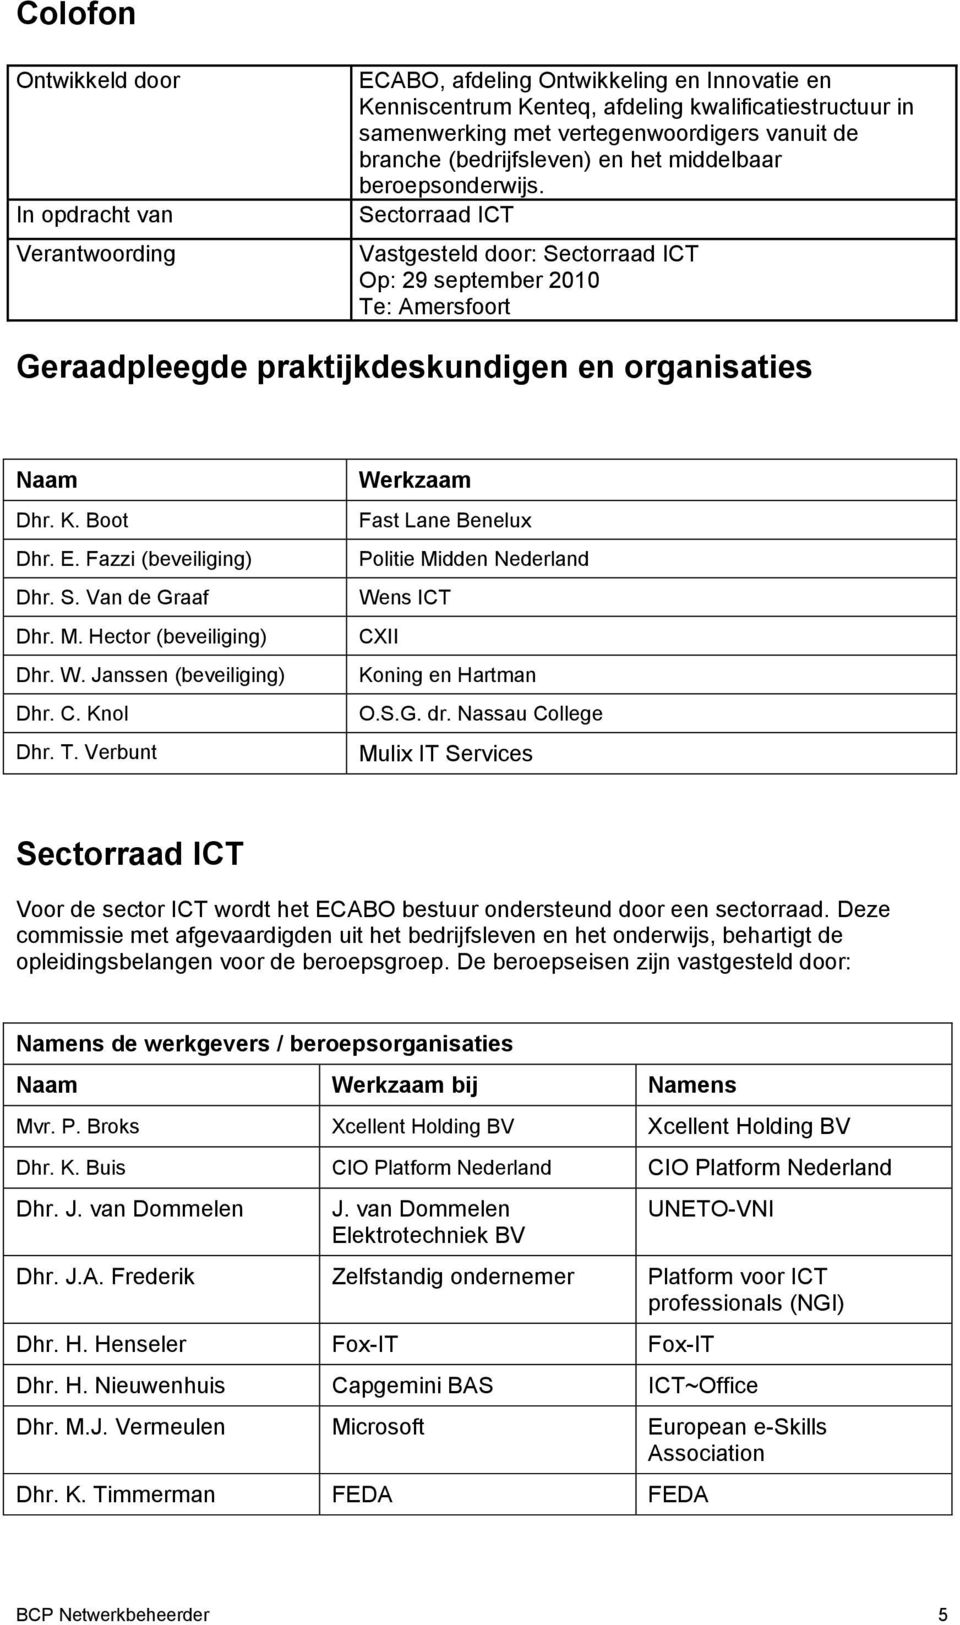 Sectorraad ICT Vastgesteld door: Sectorraad ICT Op: 29 september 2010 Te: Amersfoort Geraadpleegde praktijkdeskundigen en organisaties Naam Dhr. K. Boot Dhr. E. Fazzi (beveiliging) Dhr. S. Van de Graaf Dhr.